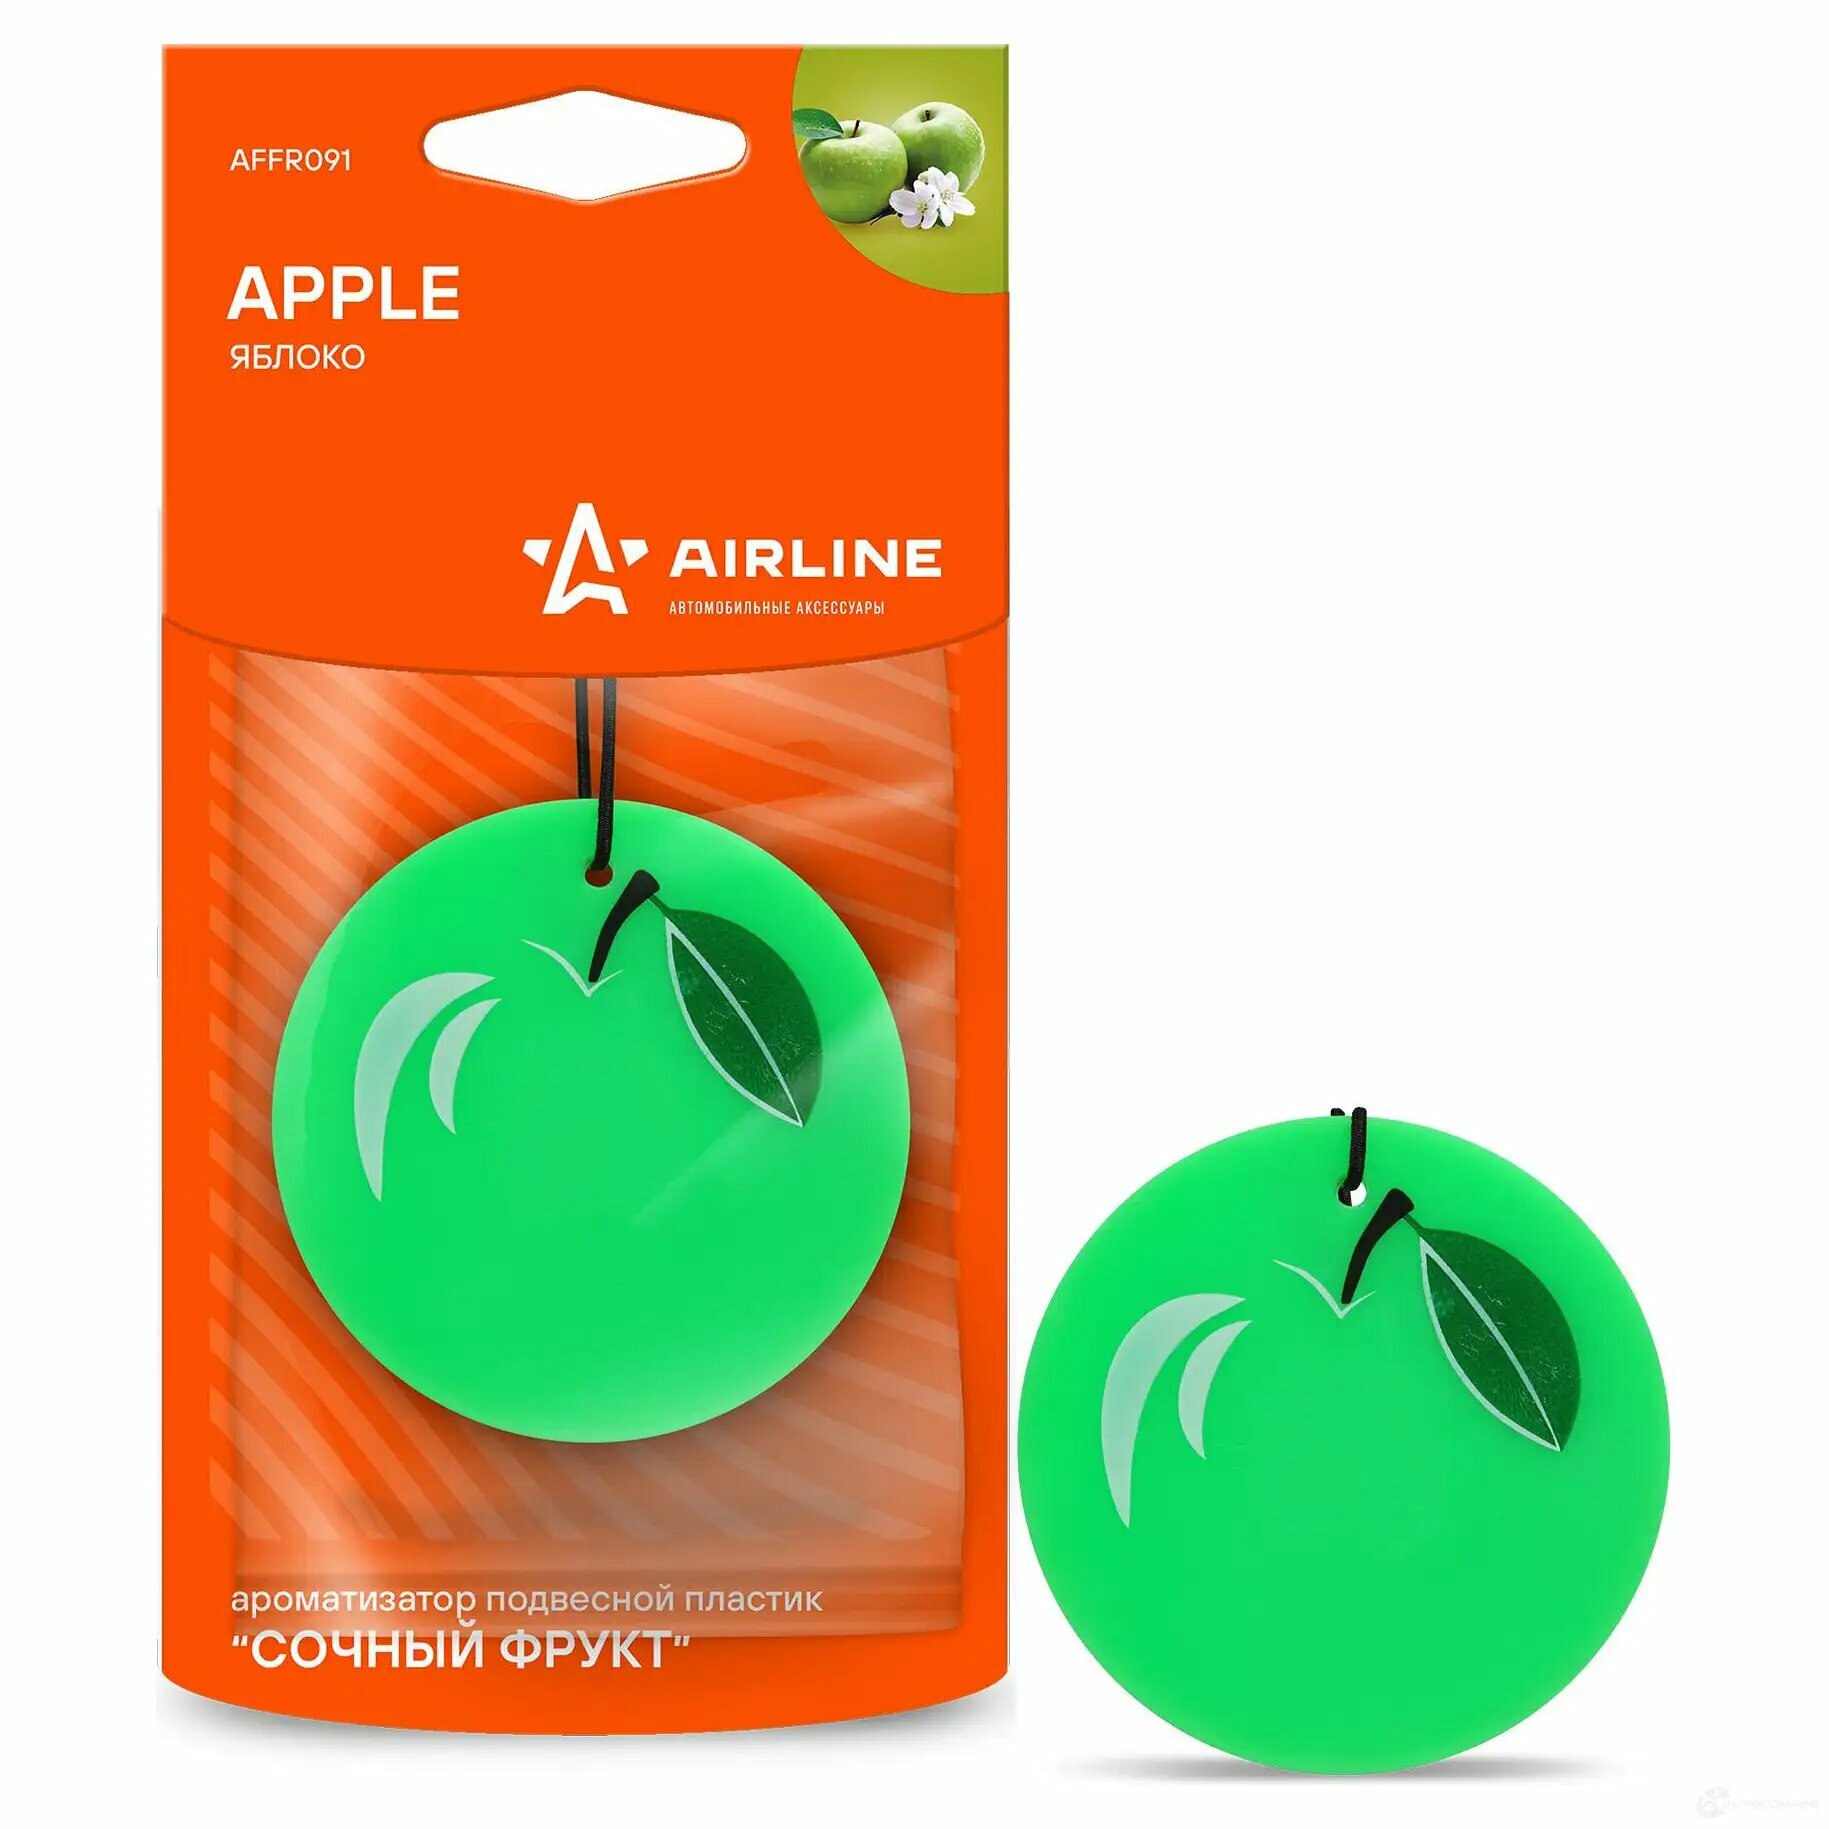 Airline ароматизатор подвесной пластик сочный фрукт яблоко (affr091) affr091